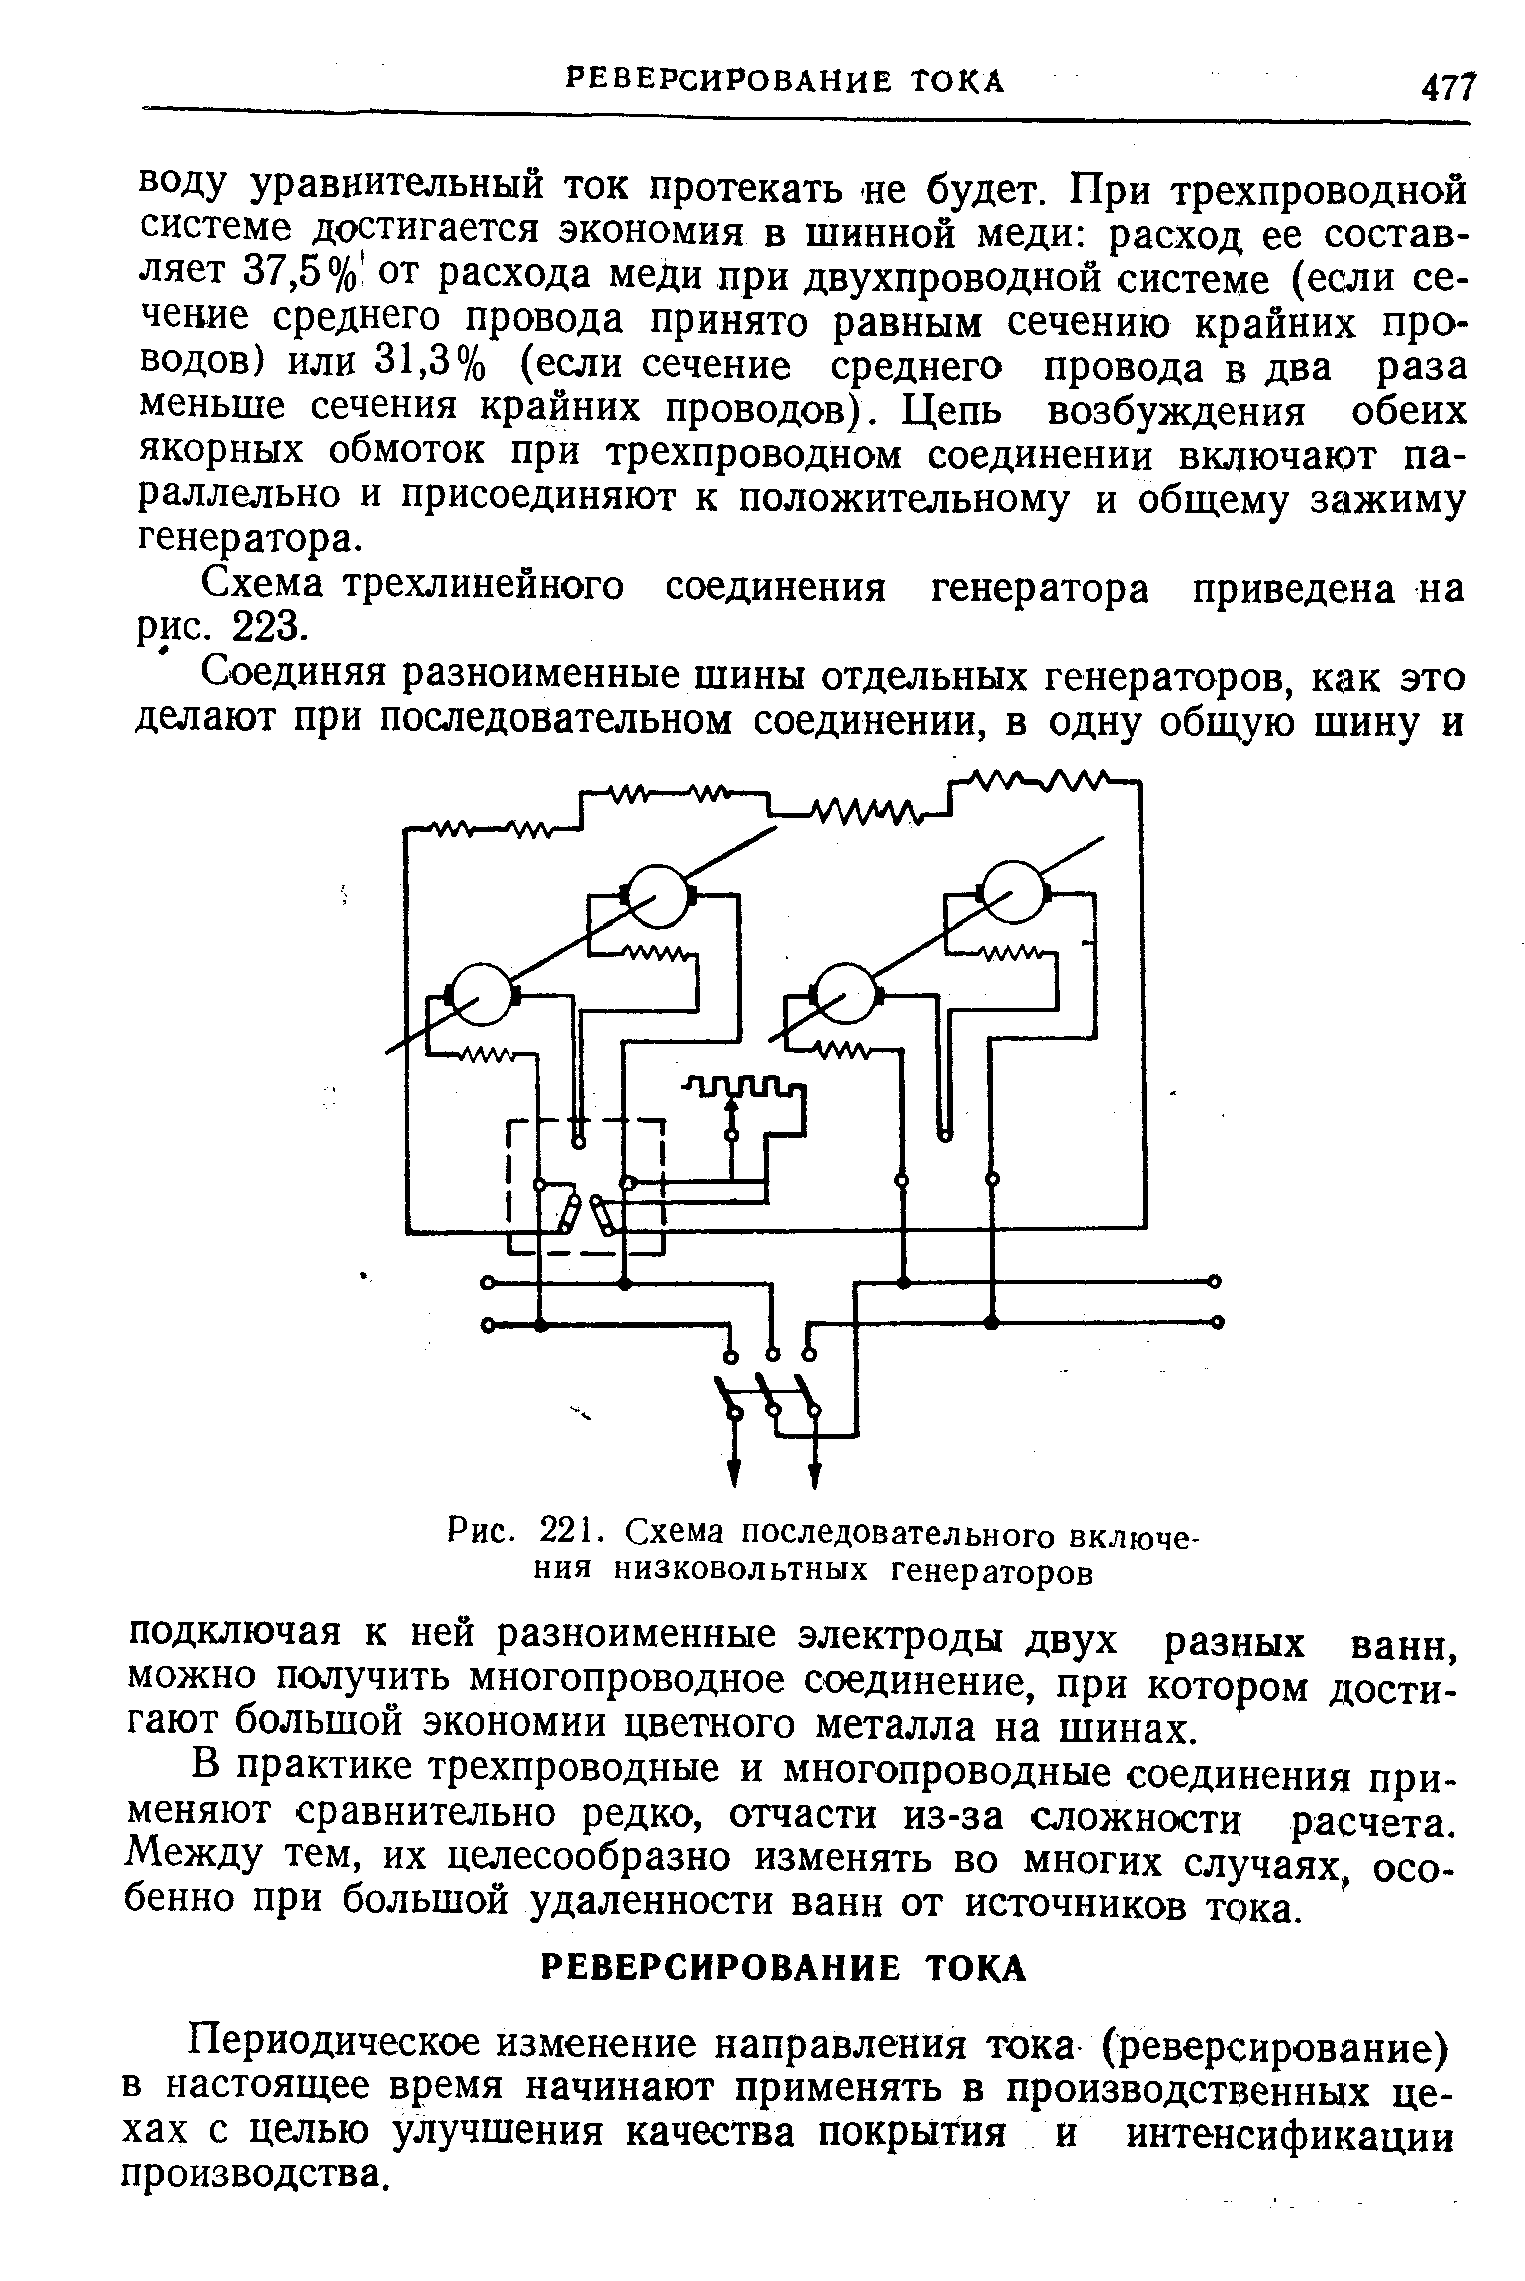 Схема трехлинейного соединения генератора приведена на рис. 223.
